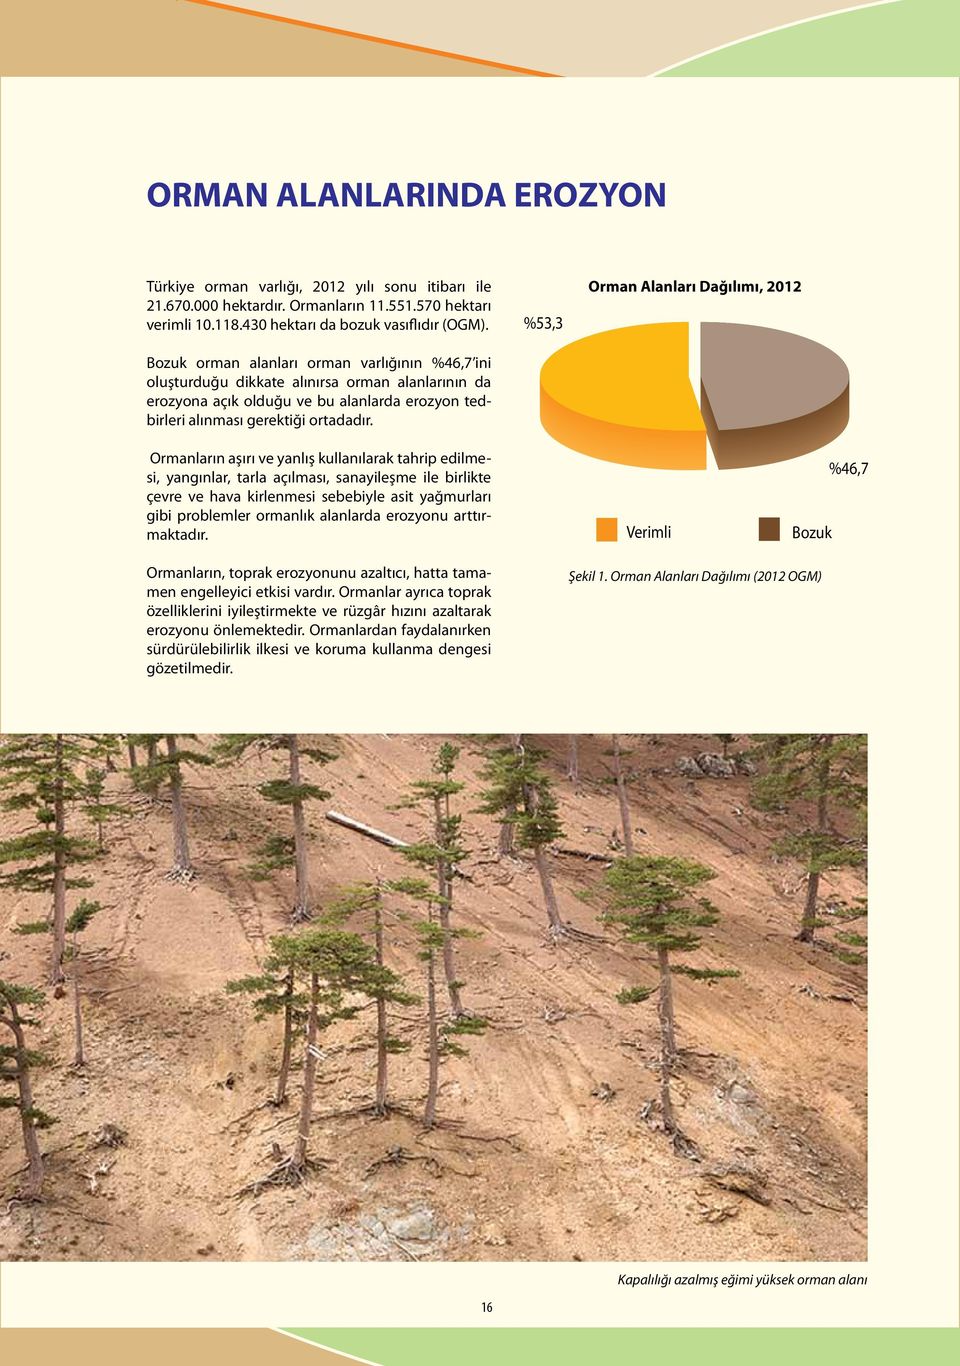 Bozuk orman alanları orman varlığının %46,7 ini oluşturduğu dikkate alınırsa orman alanlarının da erozyona açık olduğu ve bu alanlarda erozyon tedbirleri alınması gerektiği ortadadır.